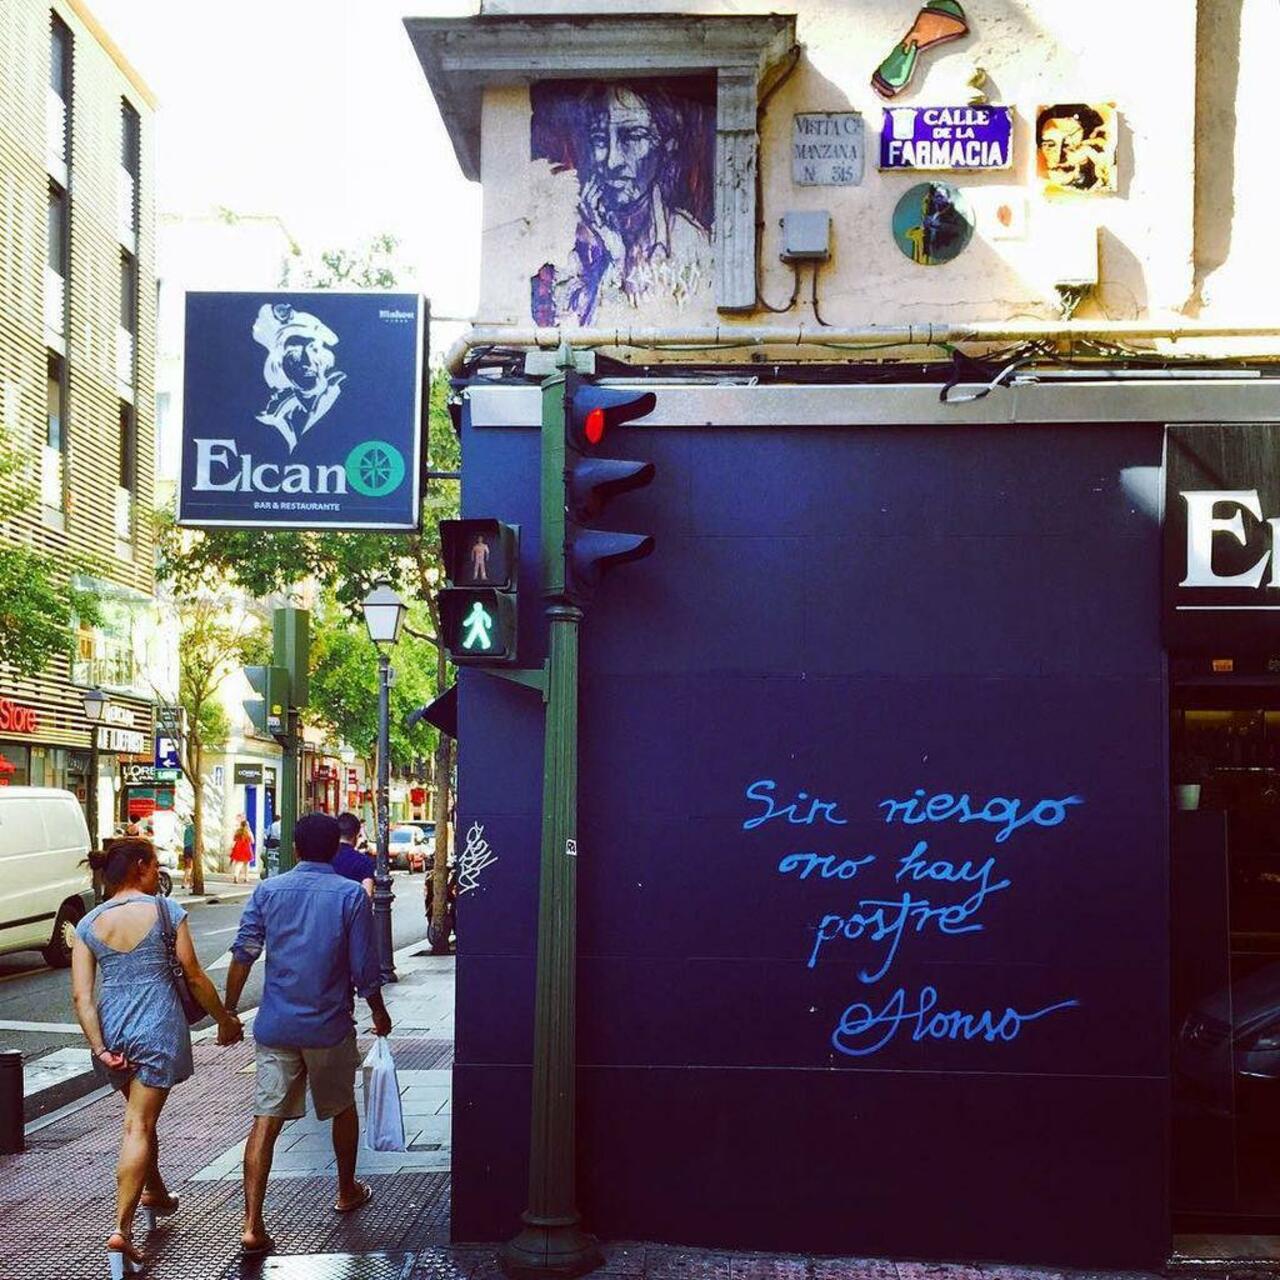 Sin #riesgo no hay #postre #Alonso #callefarmacia #igersmadrid #graffiti #graffitimadrid #instagraffiti #streetart … http://t.co/sJU7VaKj0q